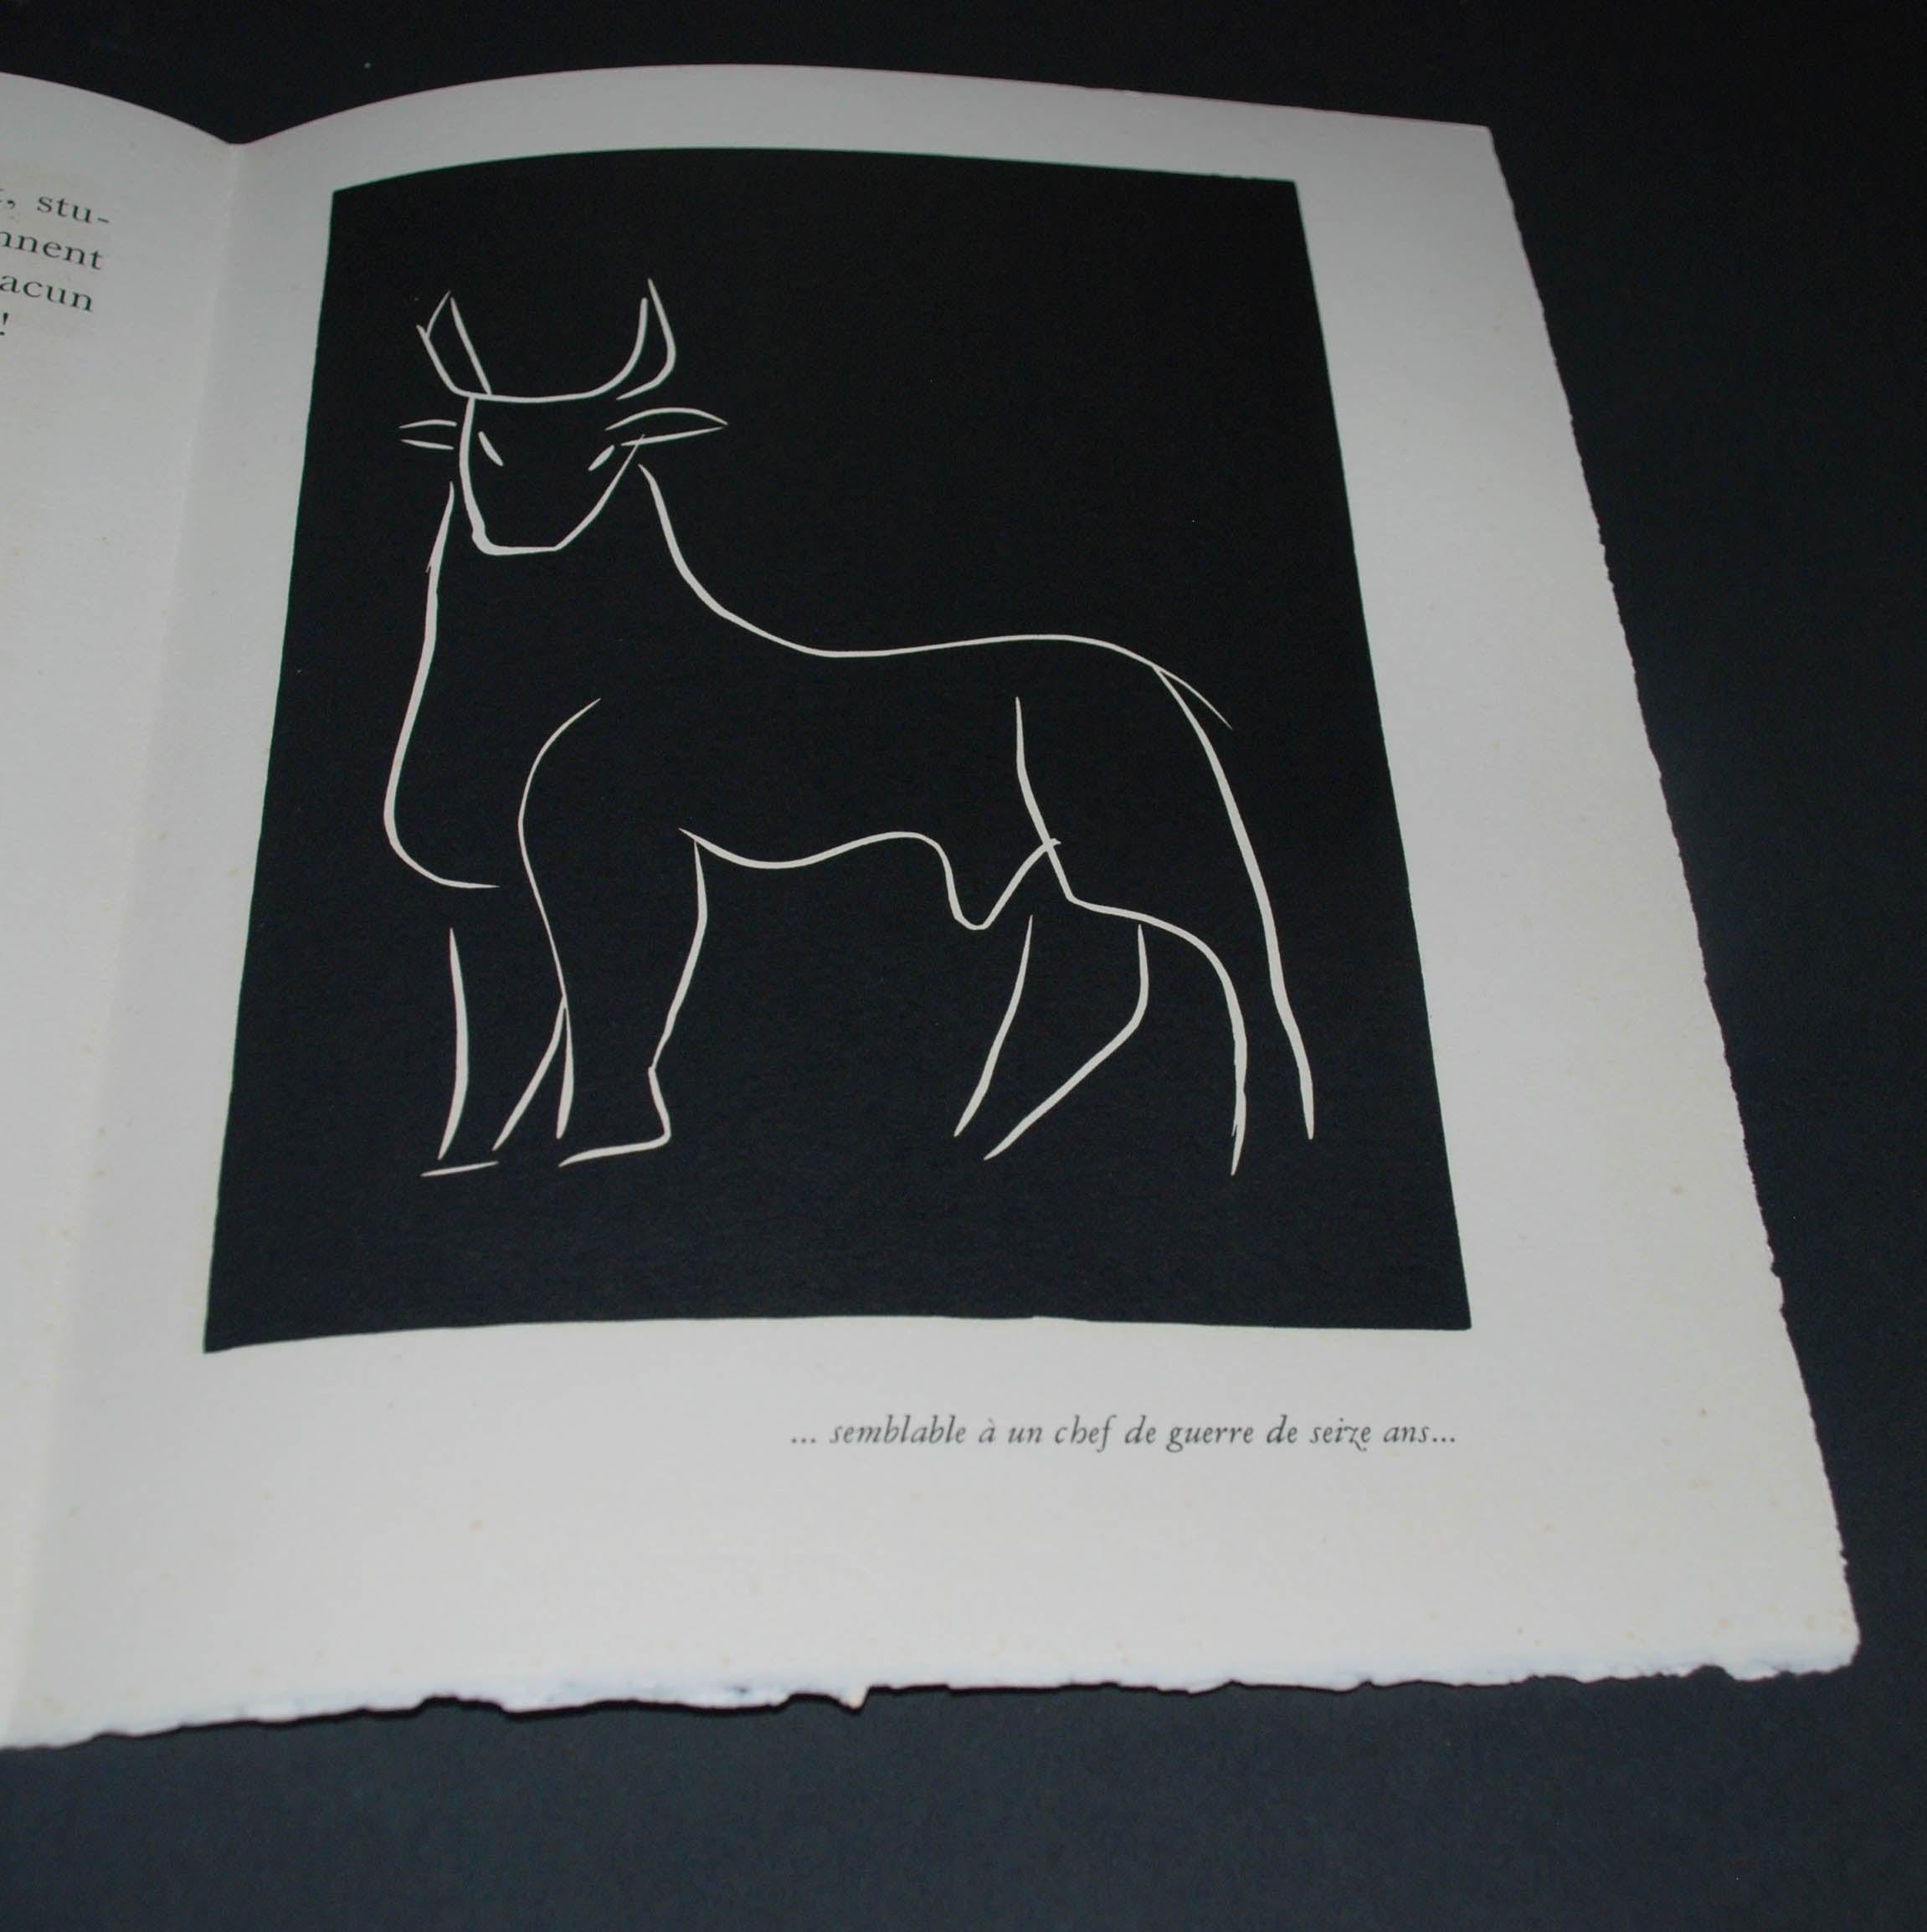 Pasiphae Plate 11: Semblable á un chef de guerre de seize ans - Print by Henri Matisse